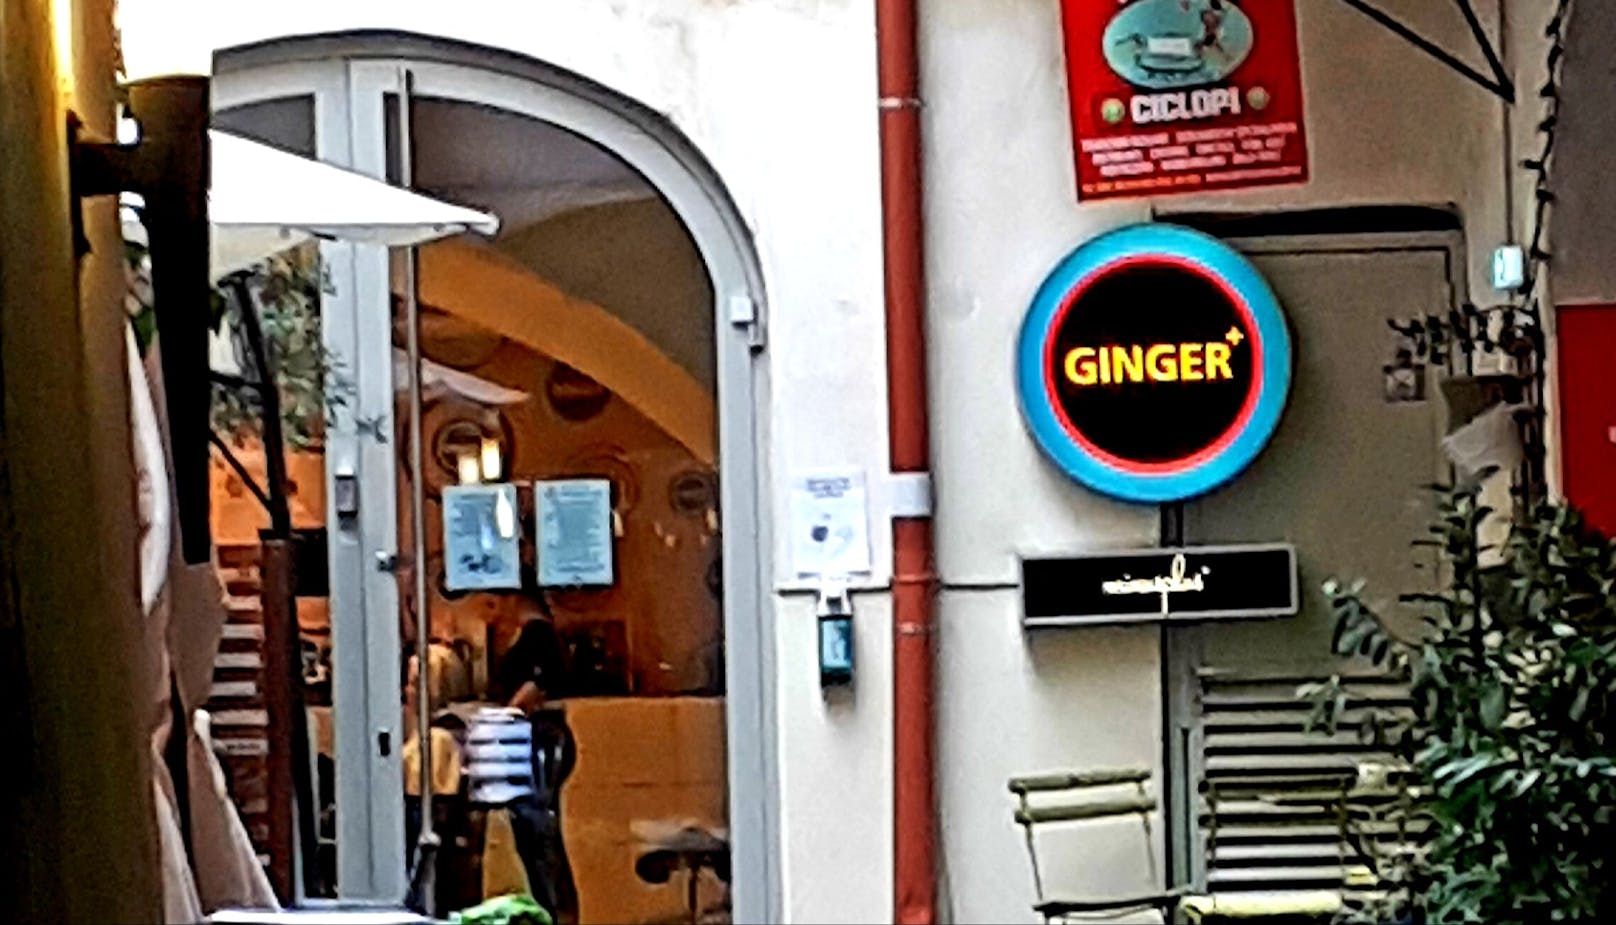 Friseurtermin meines Mannes bei Ginger in der Grazer Innenstadt